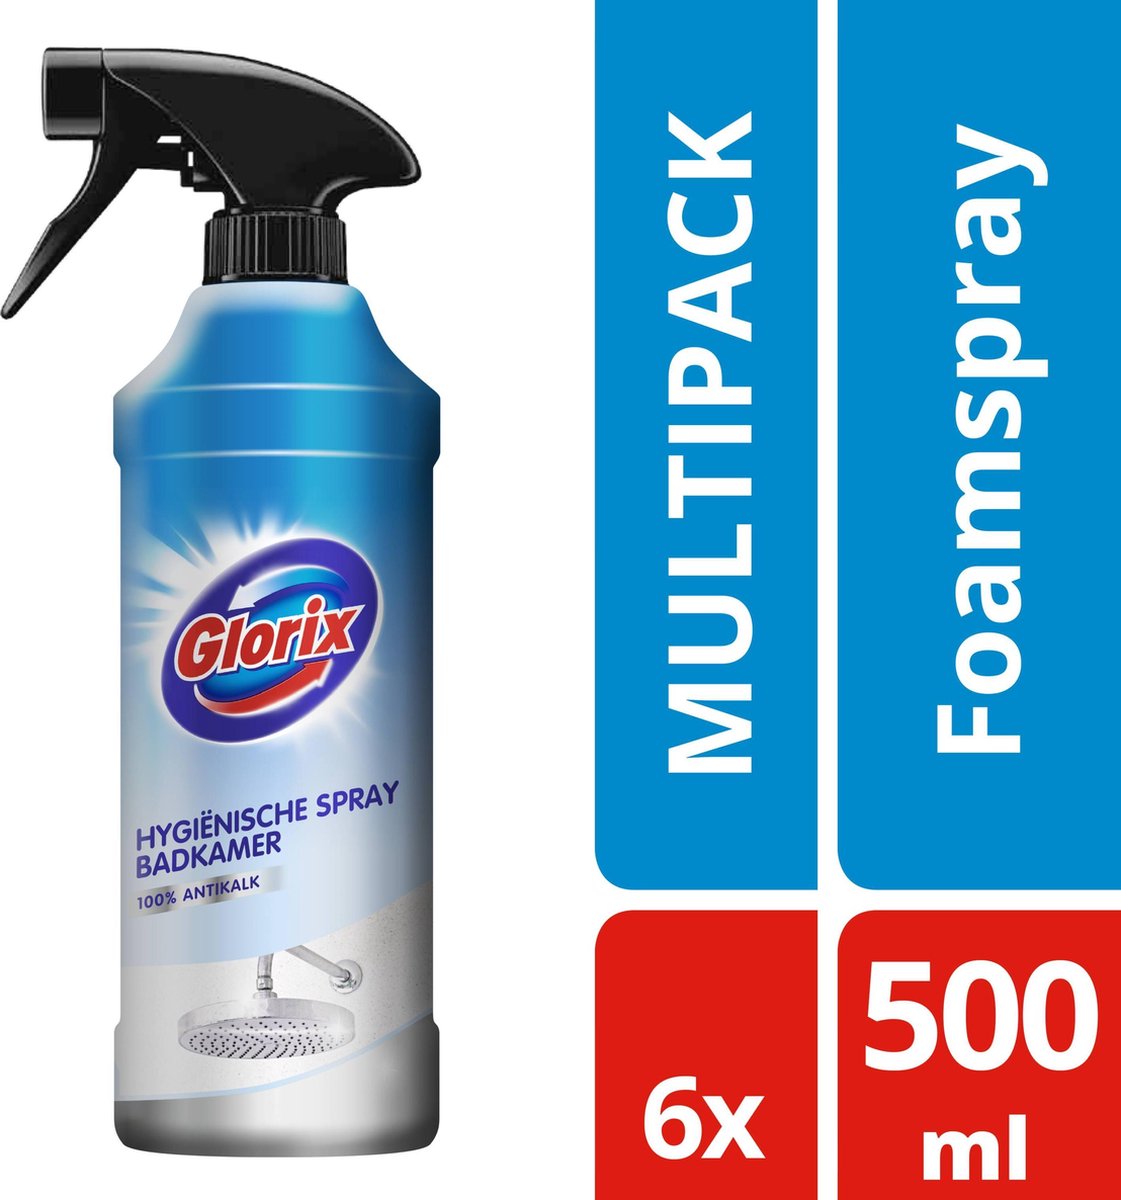 Glorix Hygiënische Badkamer Foamspray - 6 x 500 ml - Voordeelverpakking